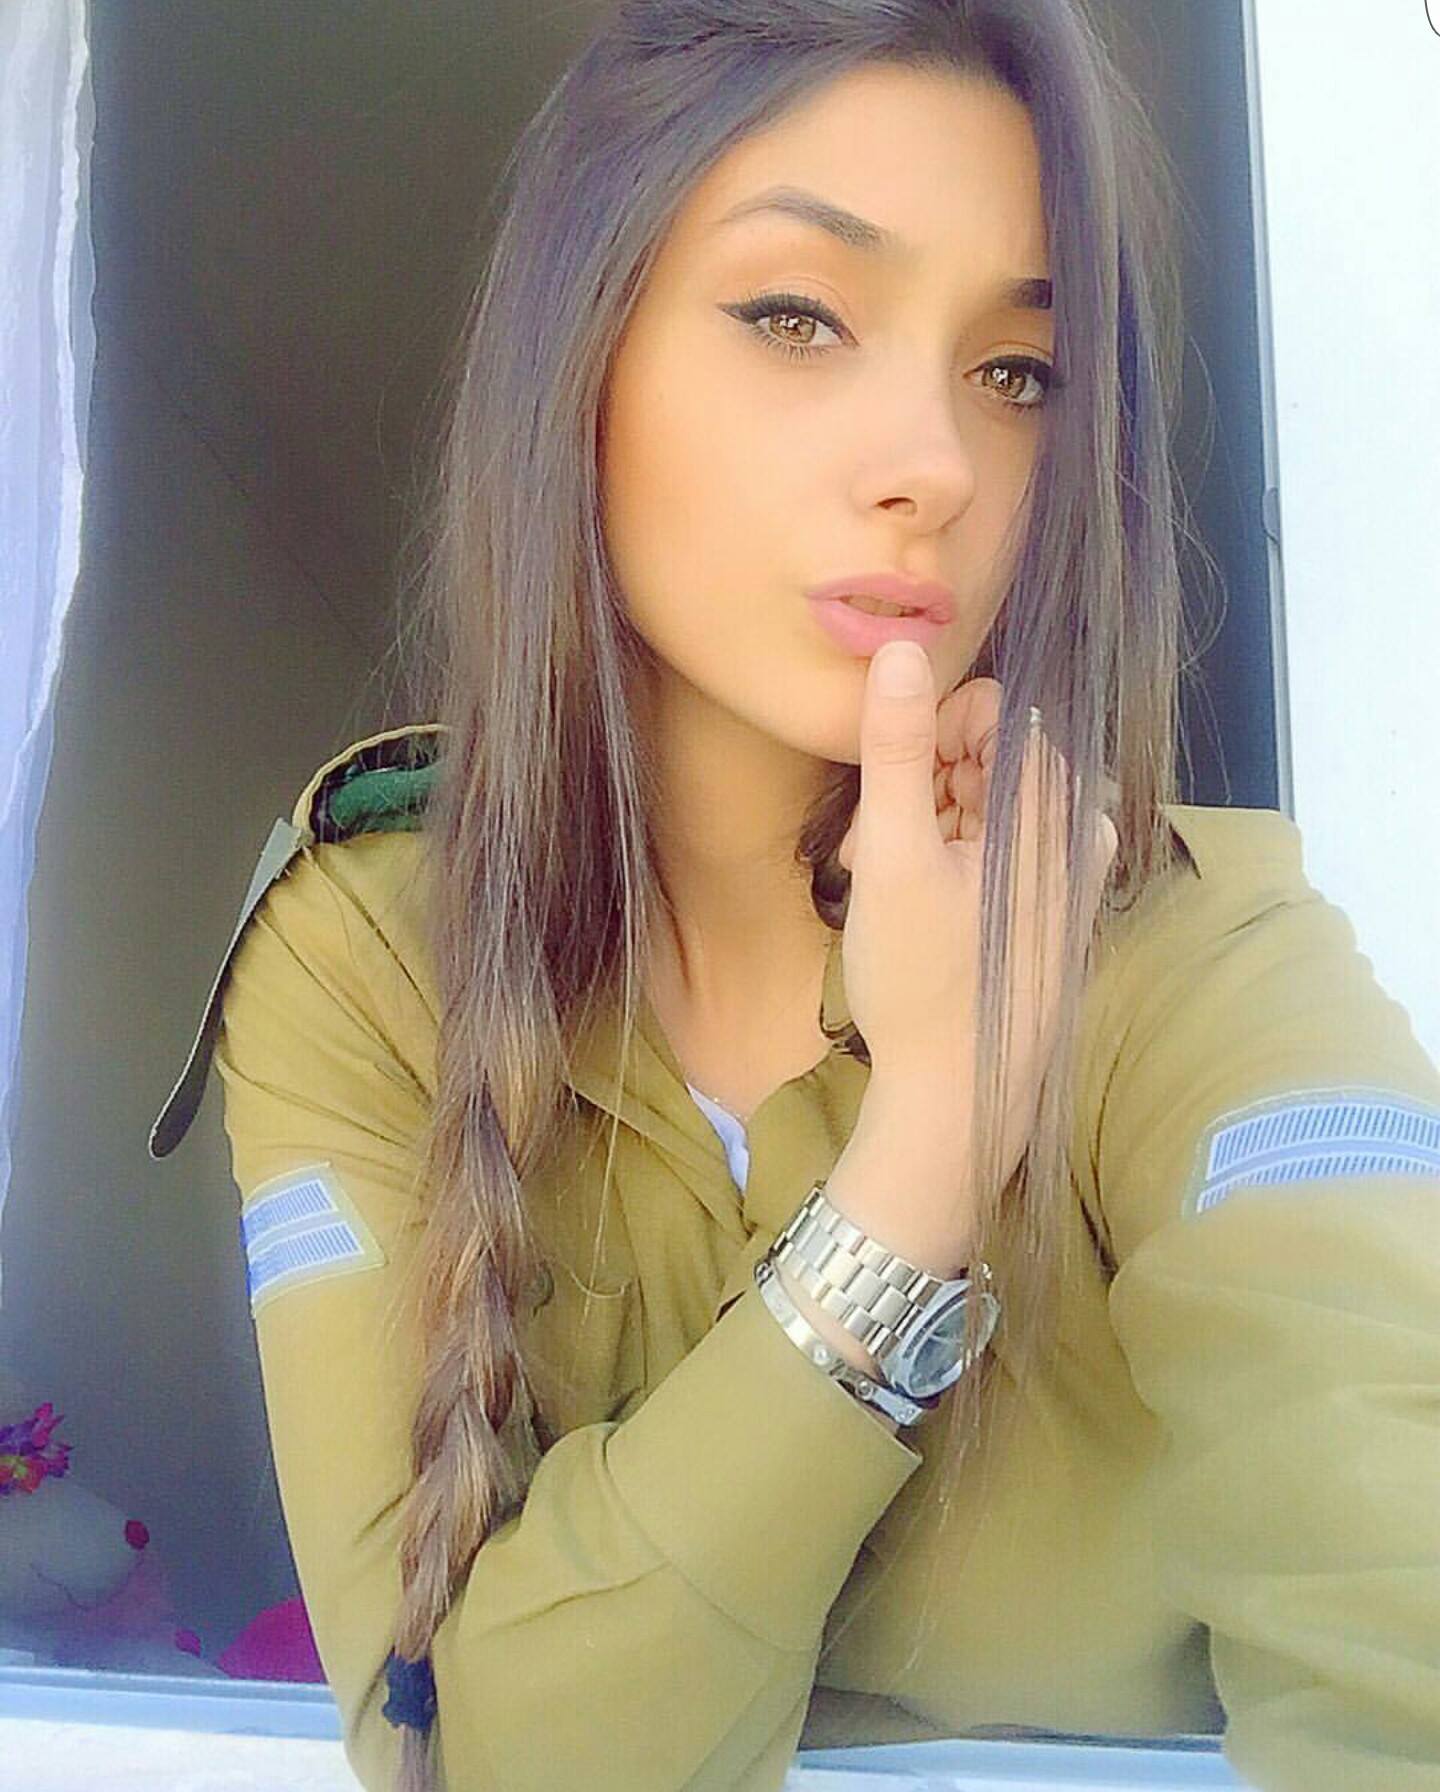 صور بنات - صور بنات فيس بوك اسرائيل.